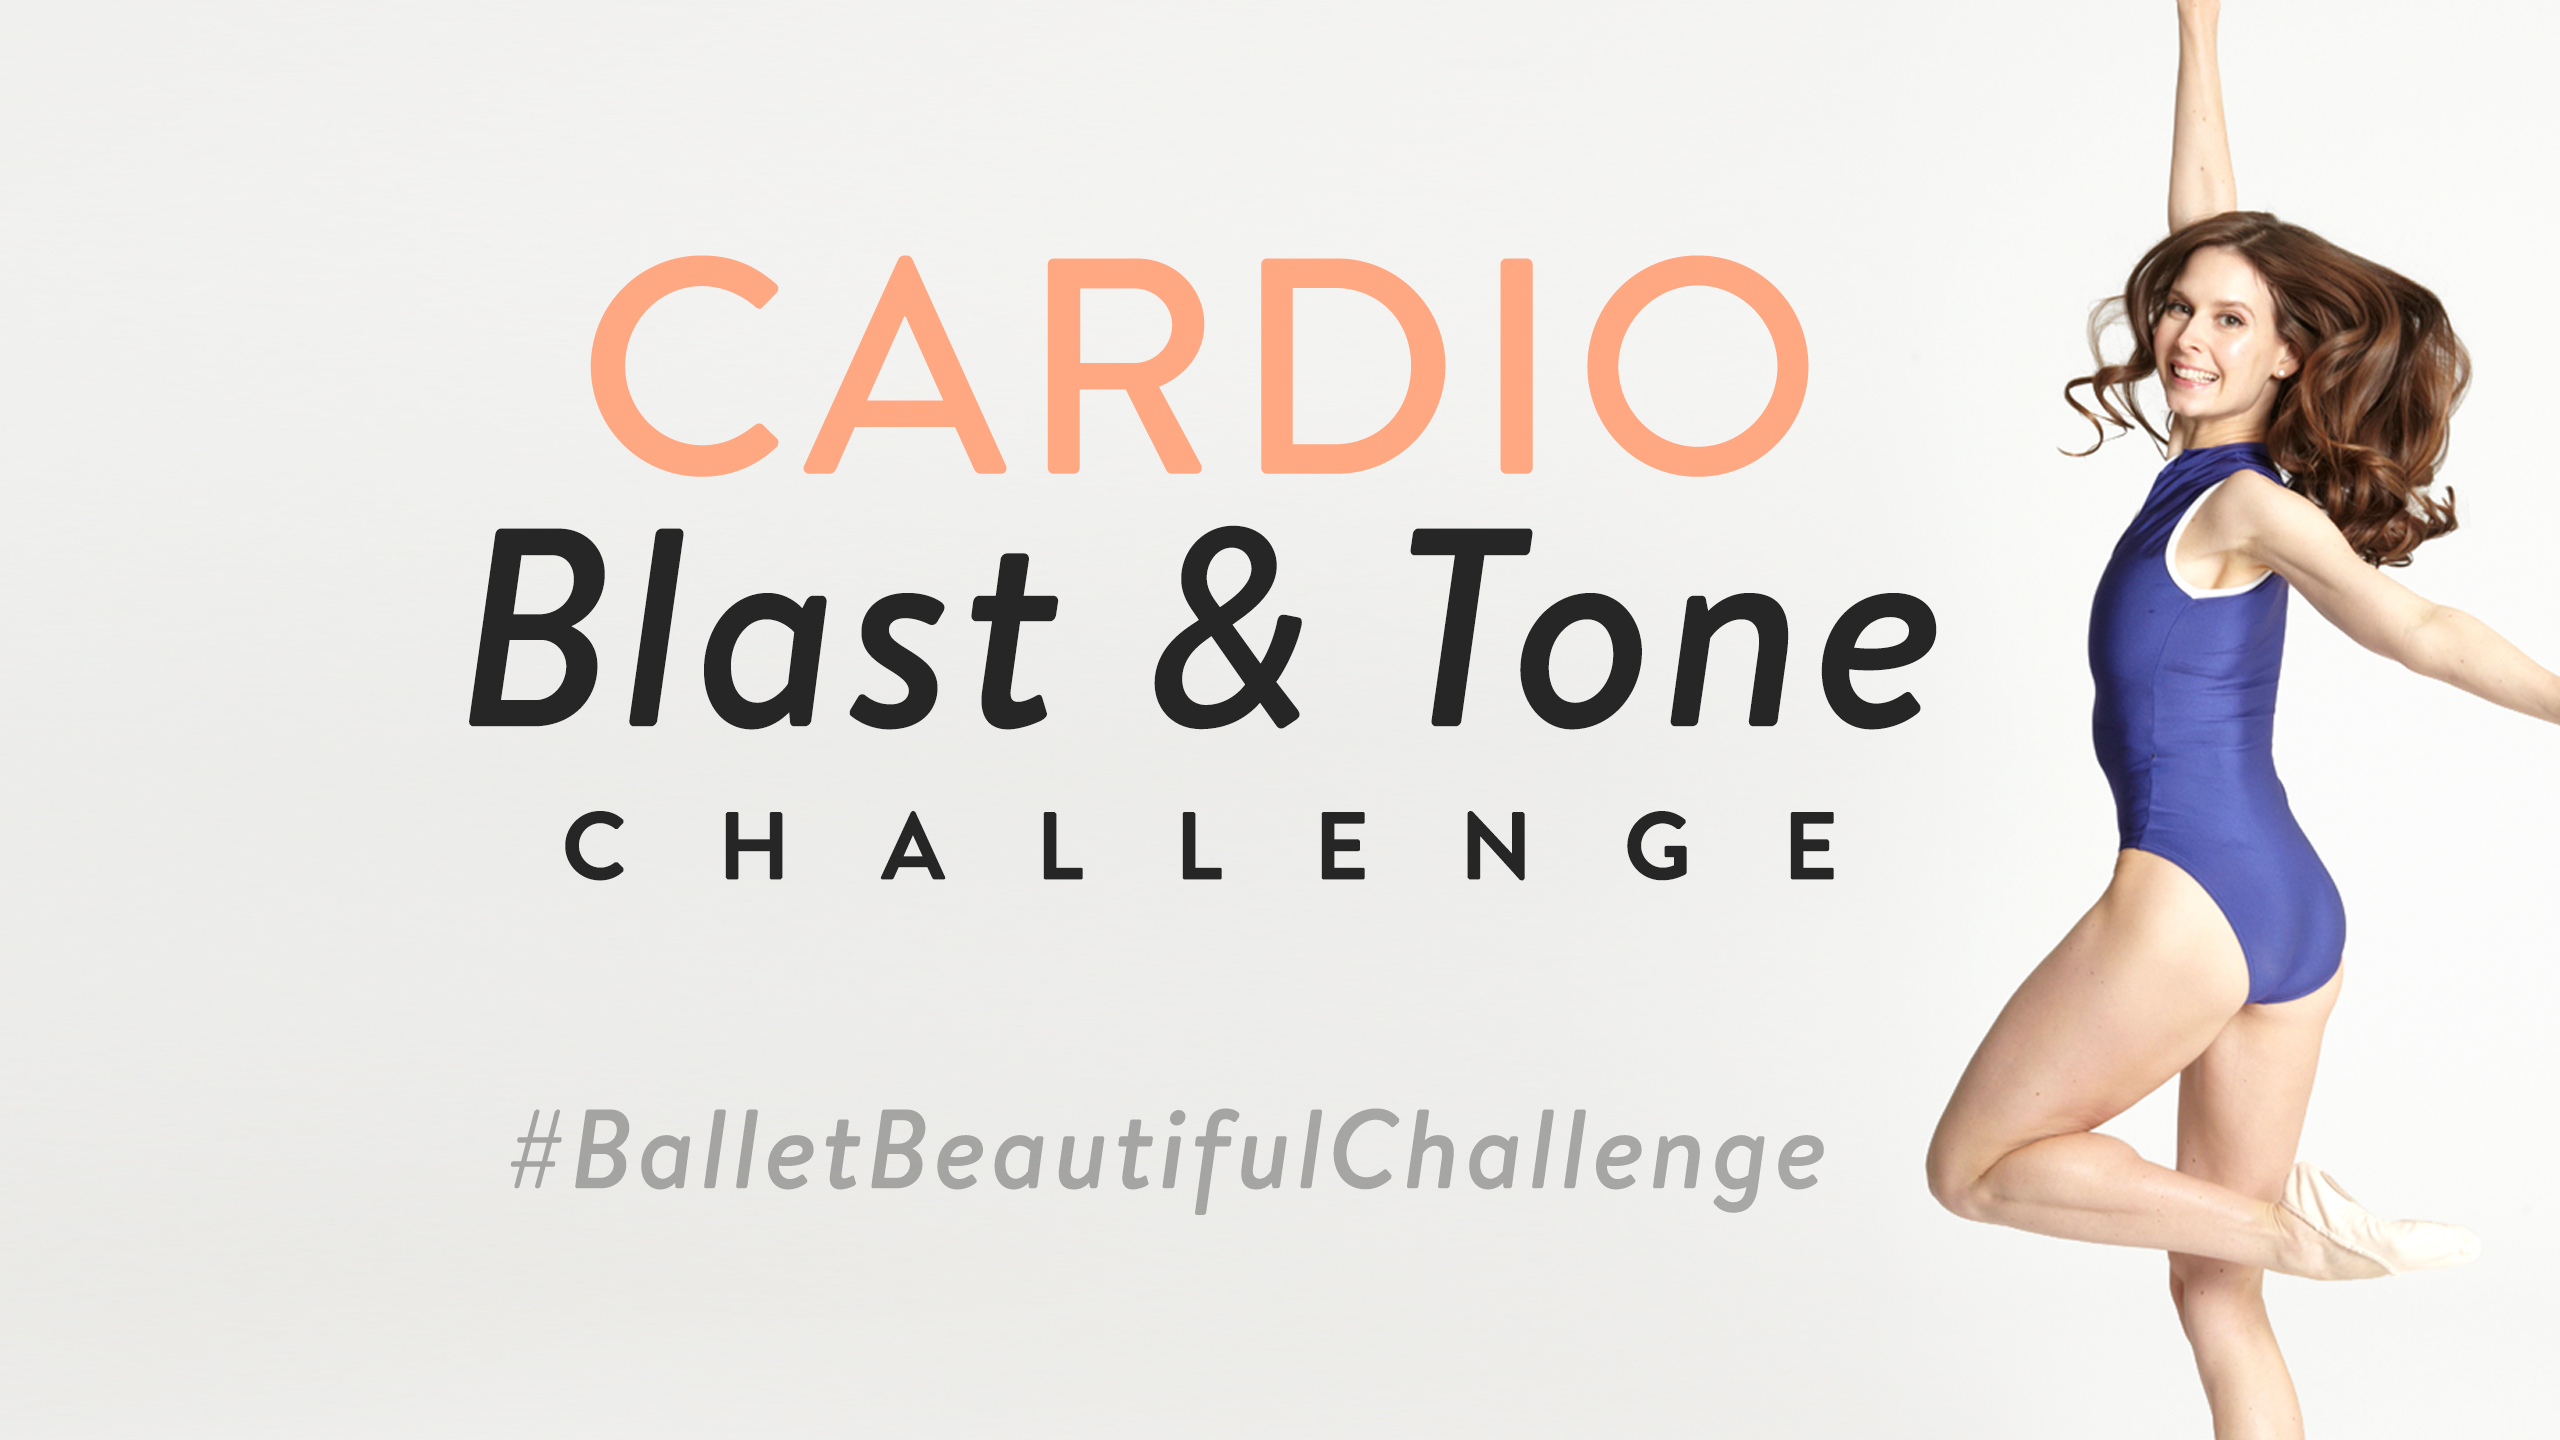 Cardio Blast and Tone Challenge!